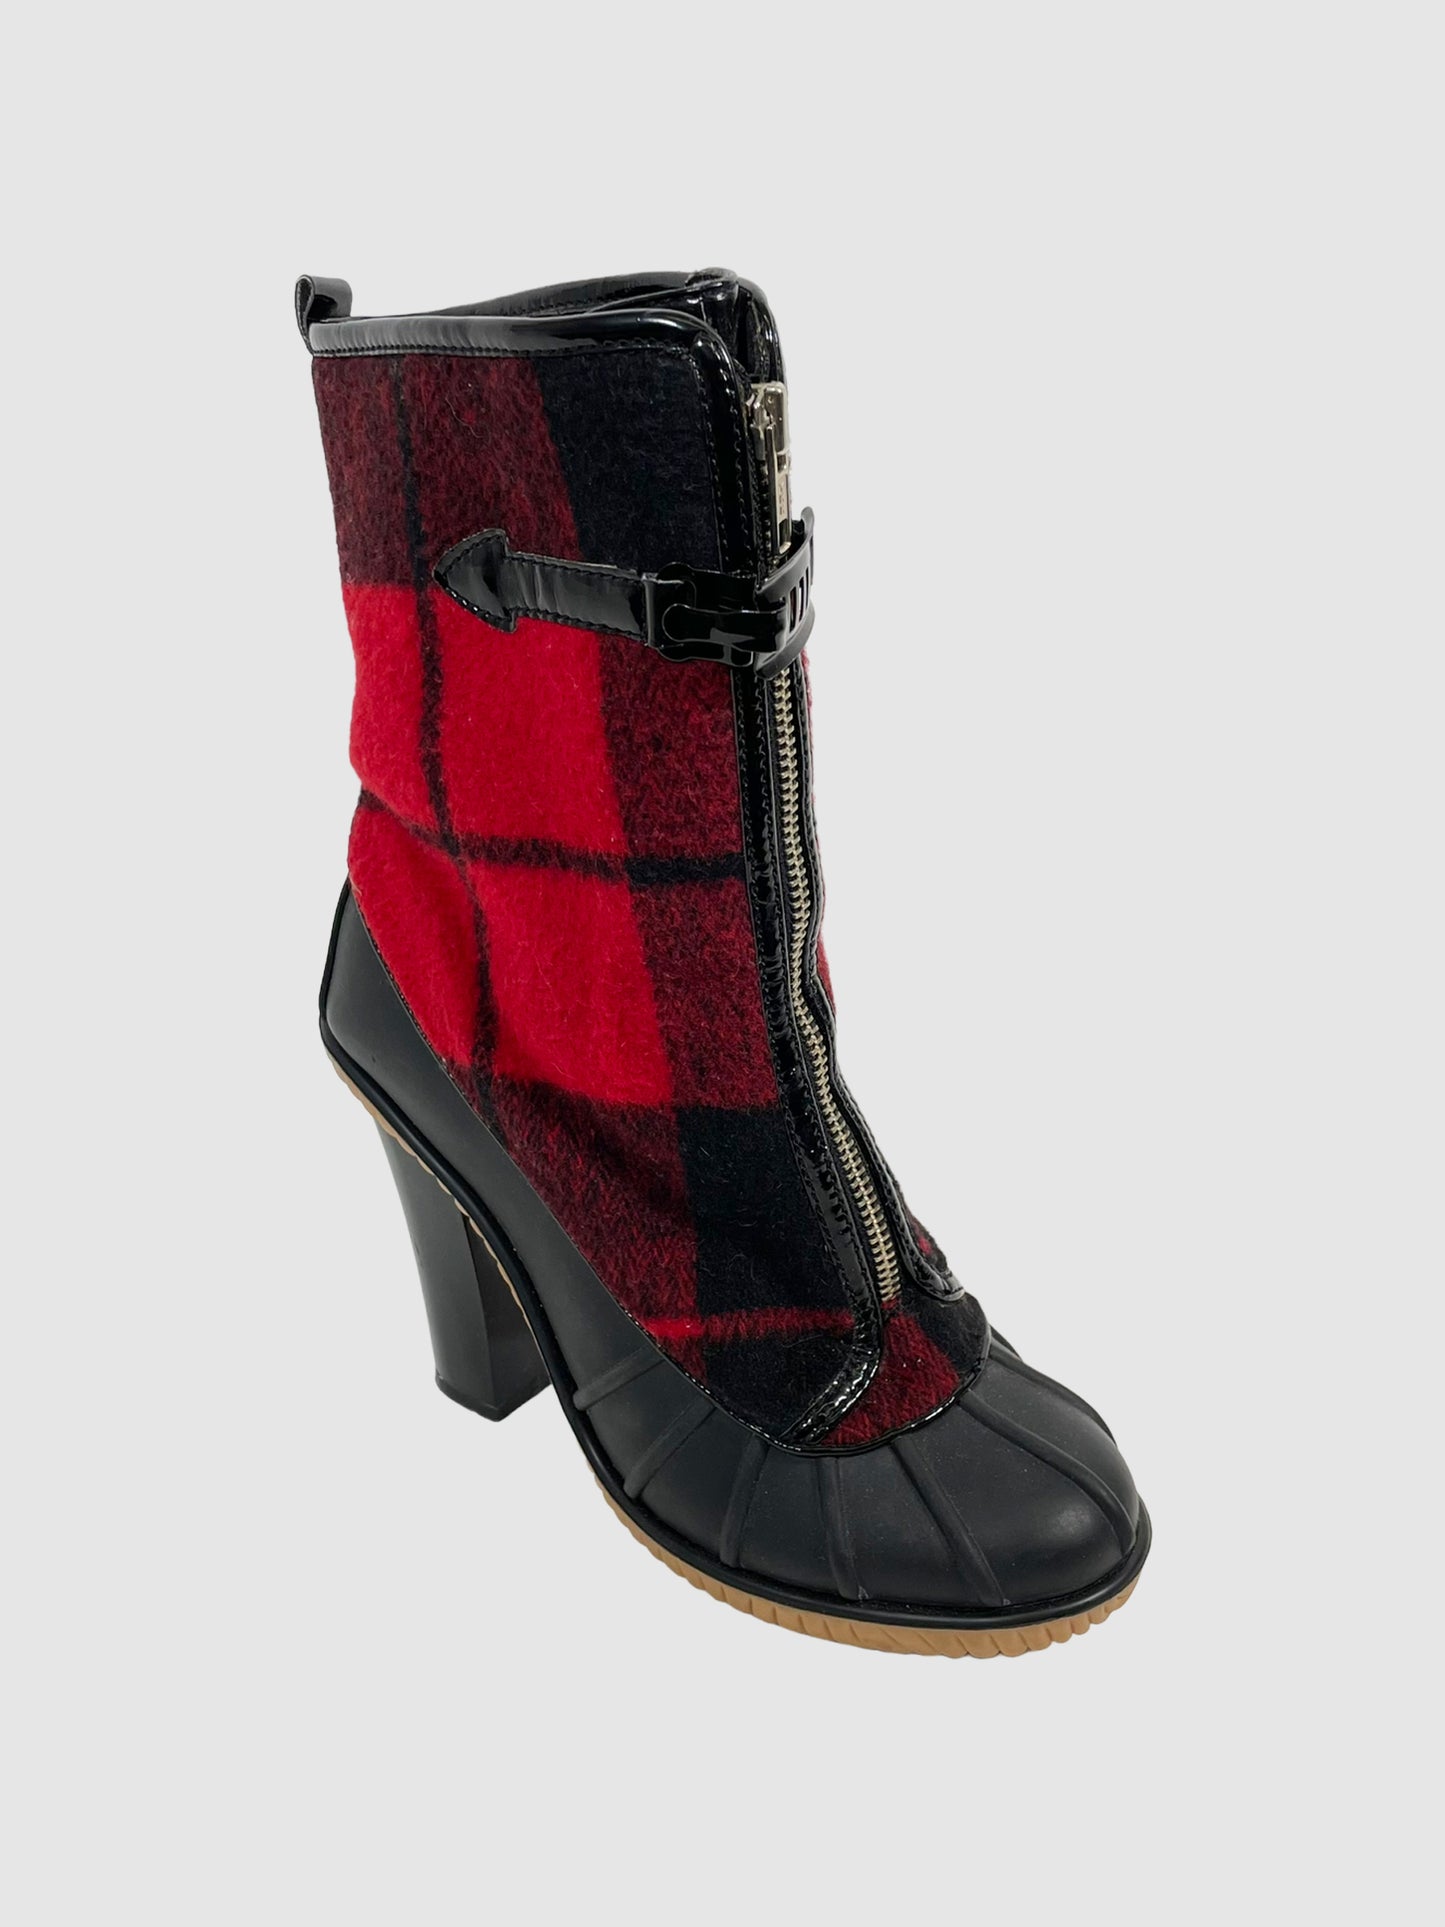 Michael Kors Plaid Ankle Boots - Size 8